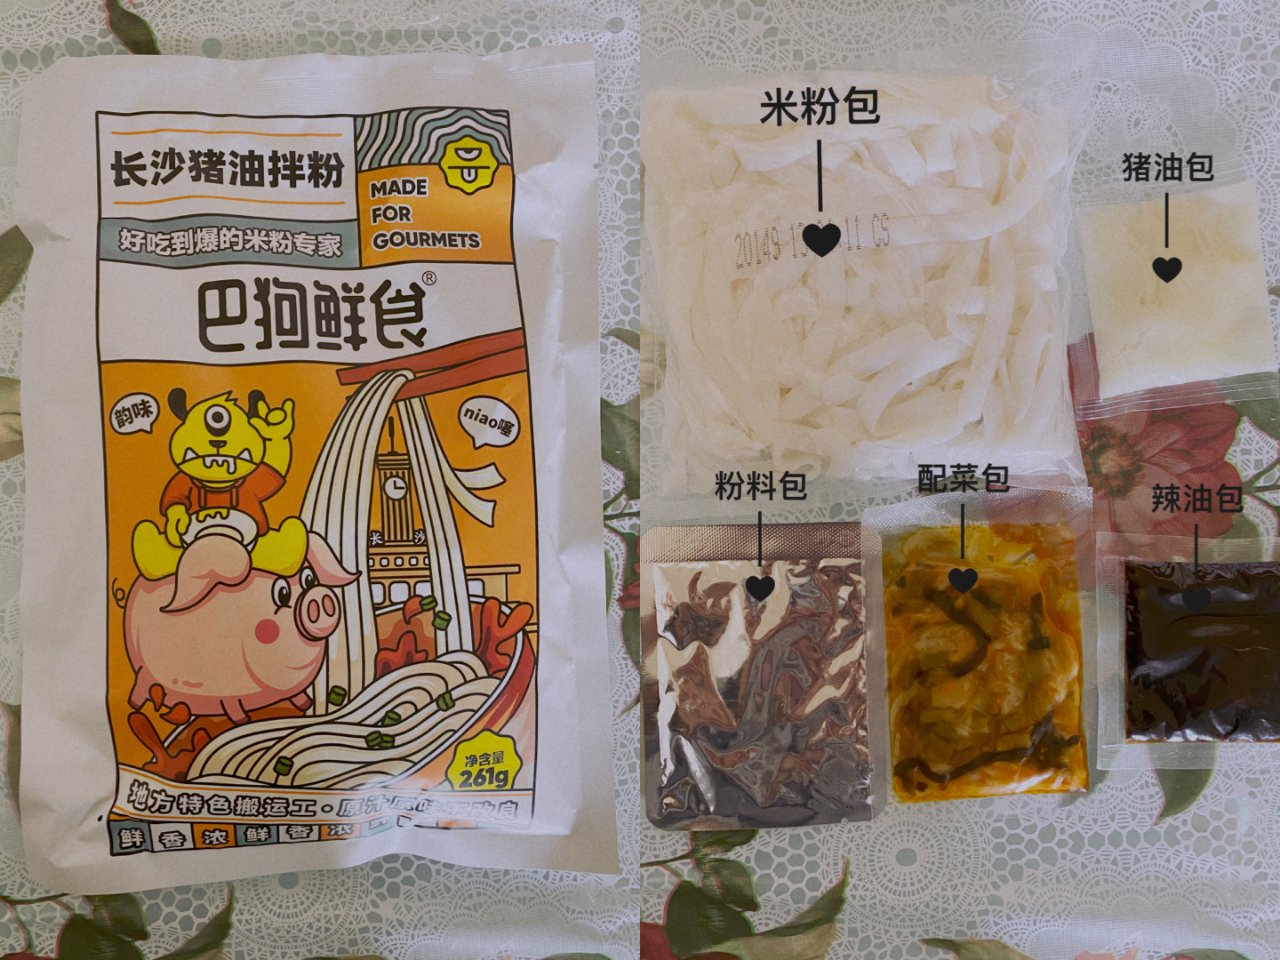 BaGou Oil Stir Rice Noodle 261g - Yamibu